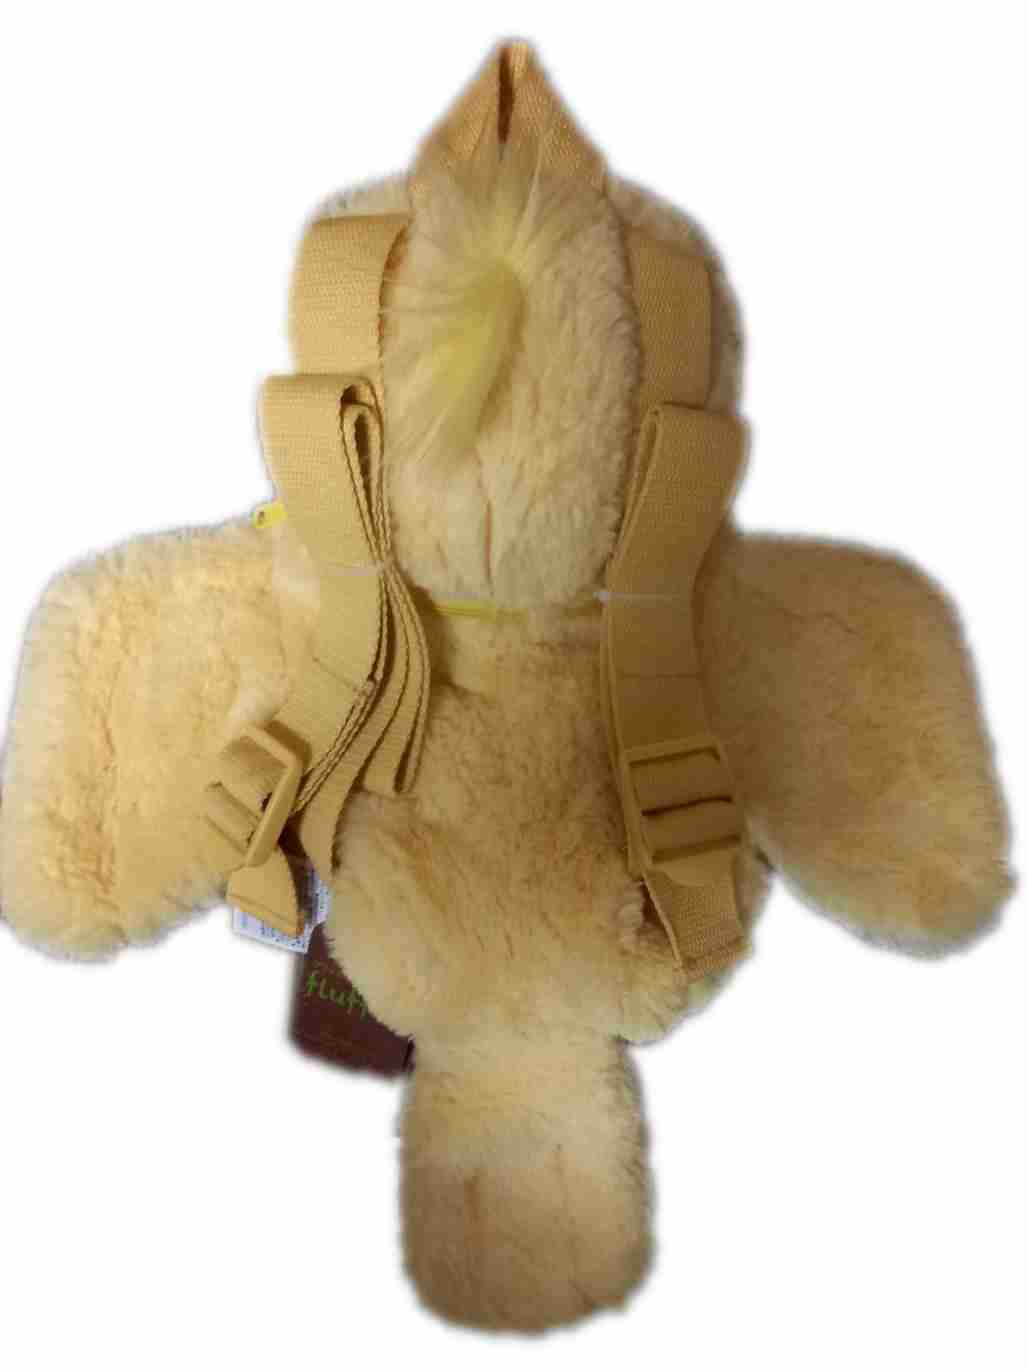 現貨 鸚鵡絨毛小背包 Sunlemon 日本正版授權 絨毛 兒童 背包 後背包 雙肩背包 玩偶 娃娃 3歲 兒童